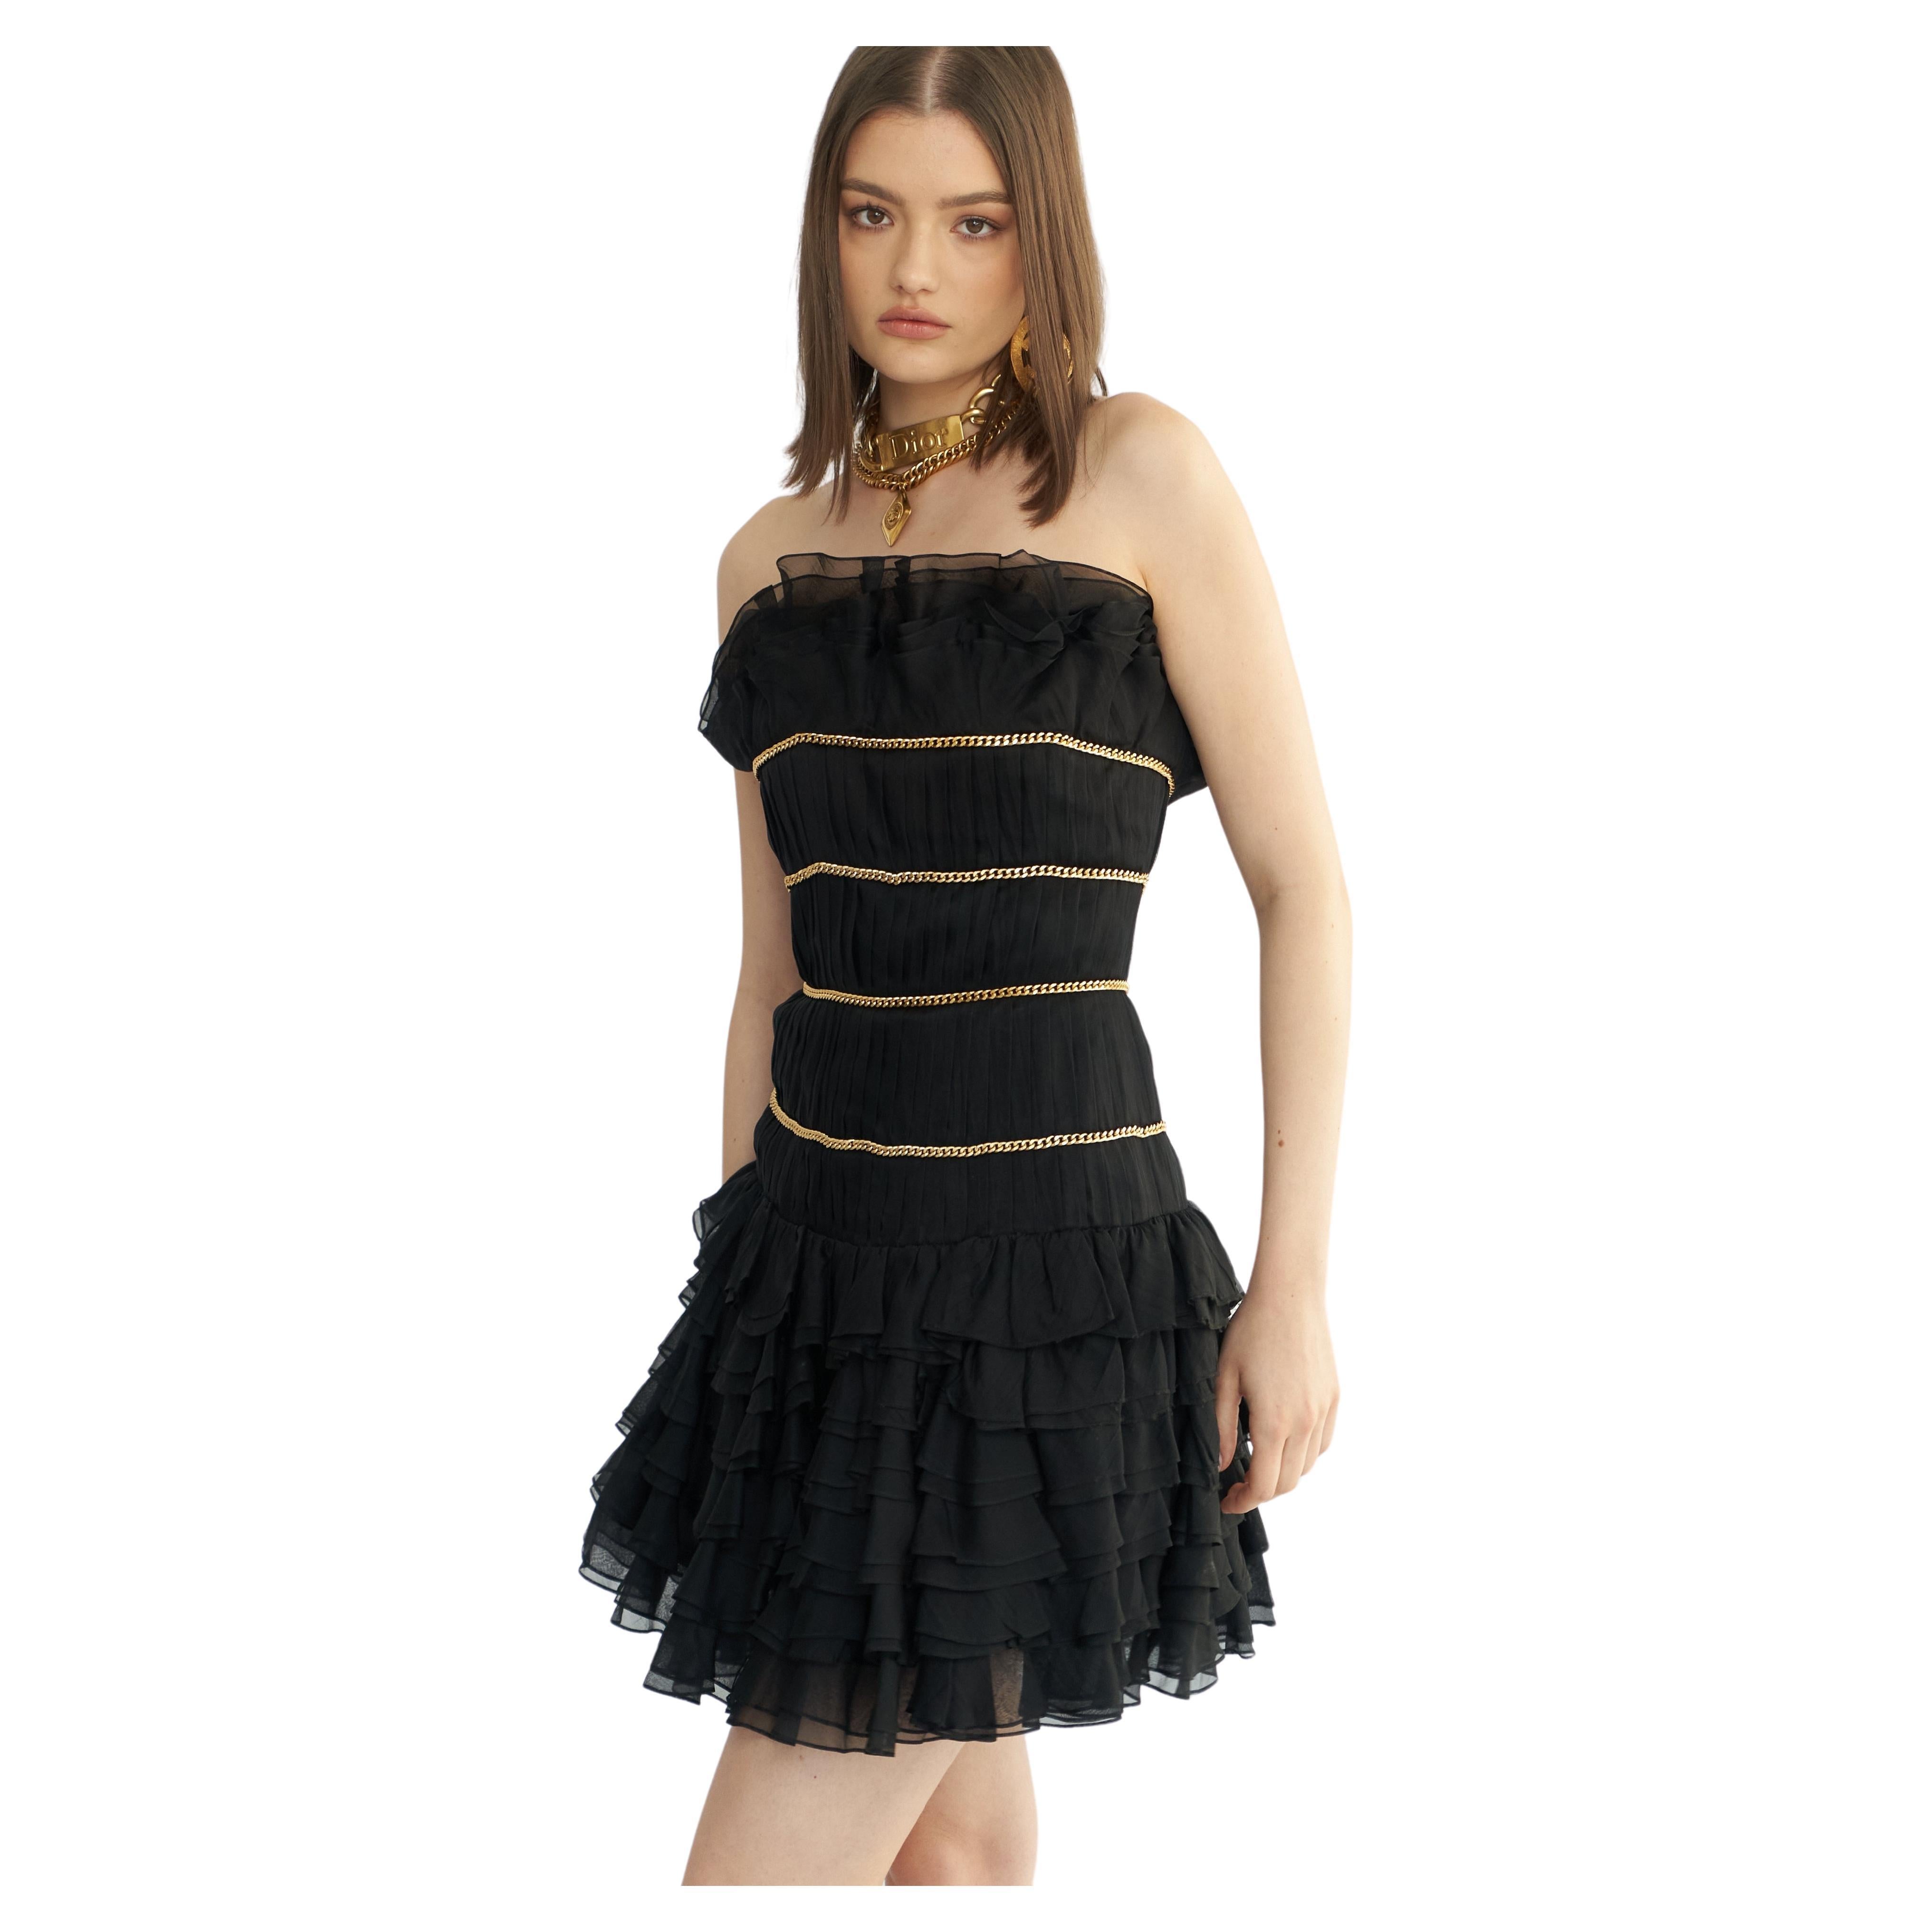 Datant de la Collection S/S 1988, une version plus longue de cette robe est apparue sur le podium de Chanel. Composée de plusieurs couches de mousseline de soie noire, elle présente un décolleté et une jupe sans bretelles à volants, ainsi qu'un